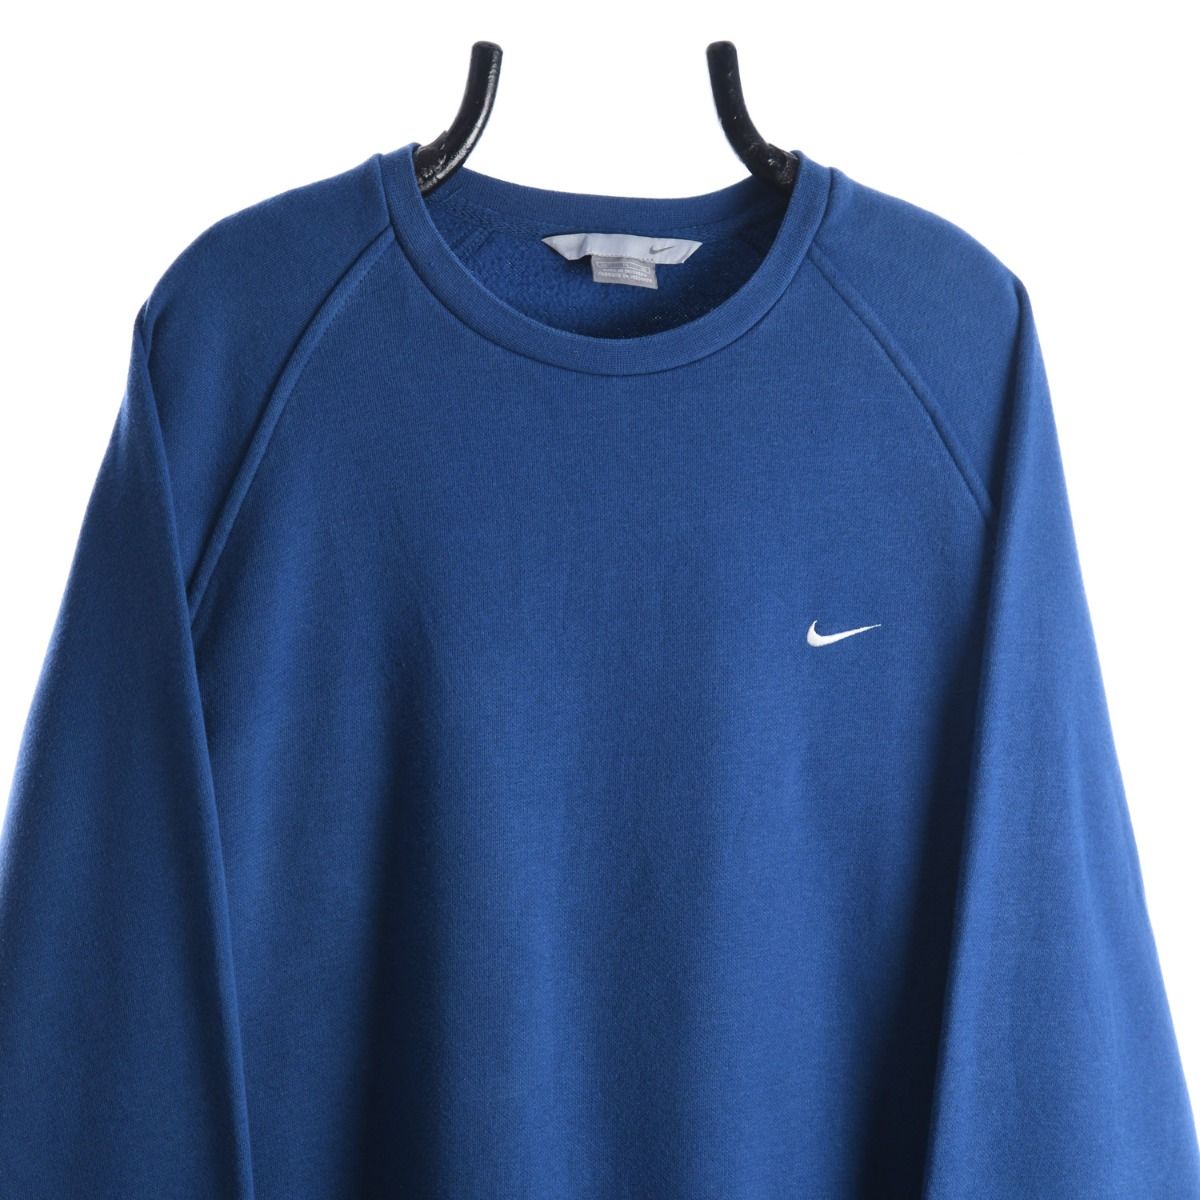 Nike Early 2000s Blue Sweatshirt